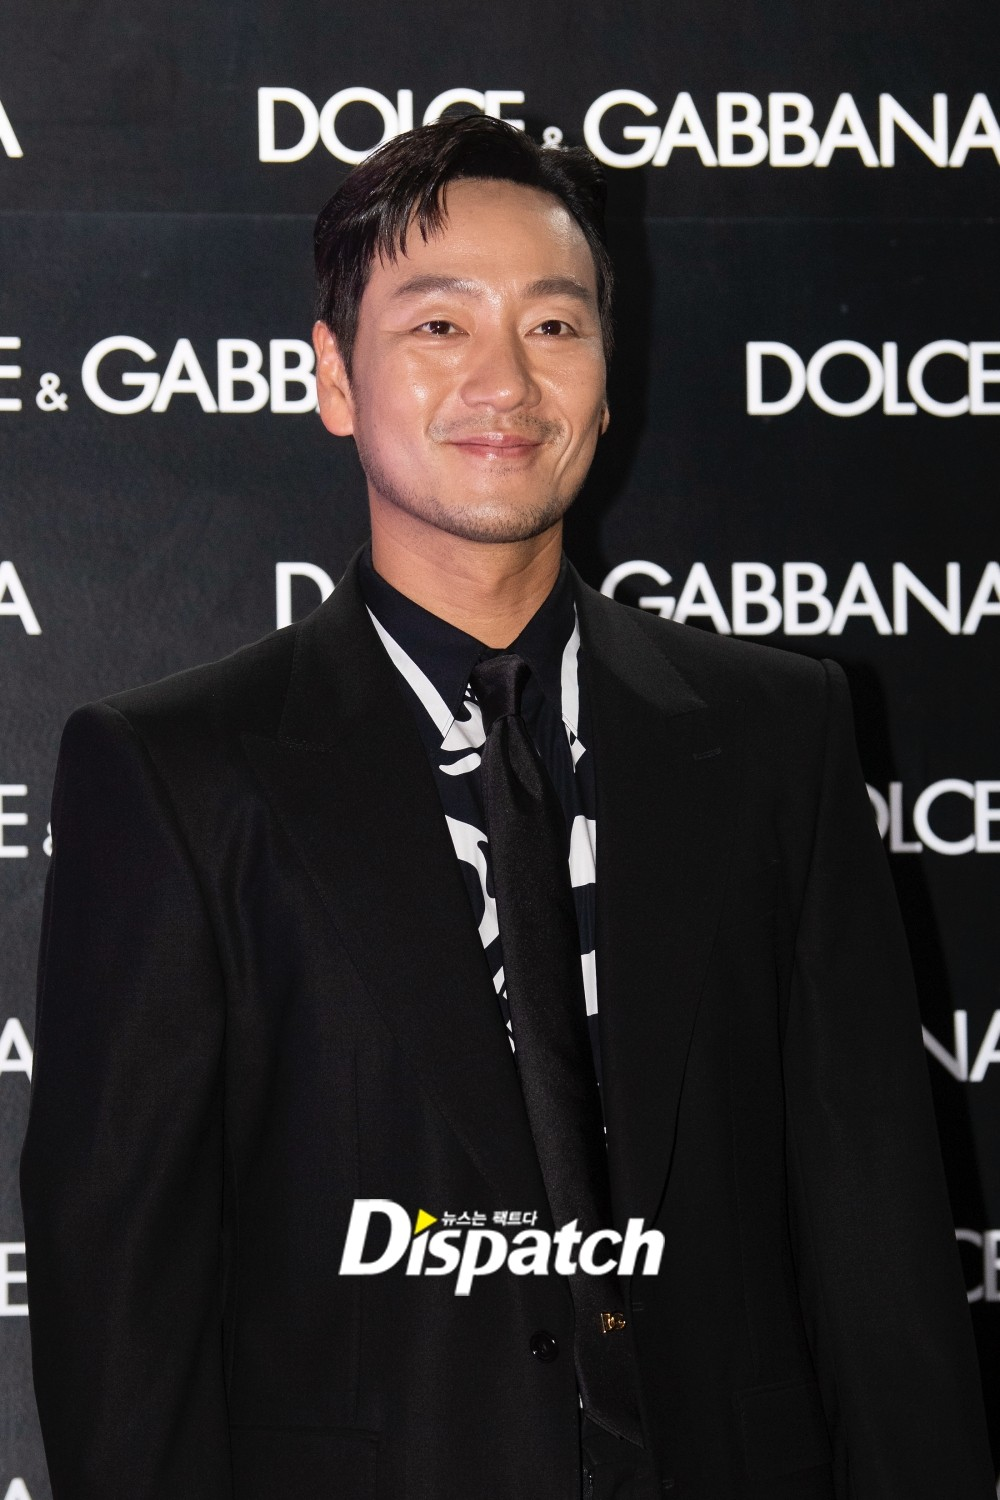 Топовые корейские знаменитости на красной дорожке Dolce & Gabbana x Frieze Art Event